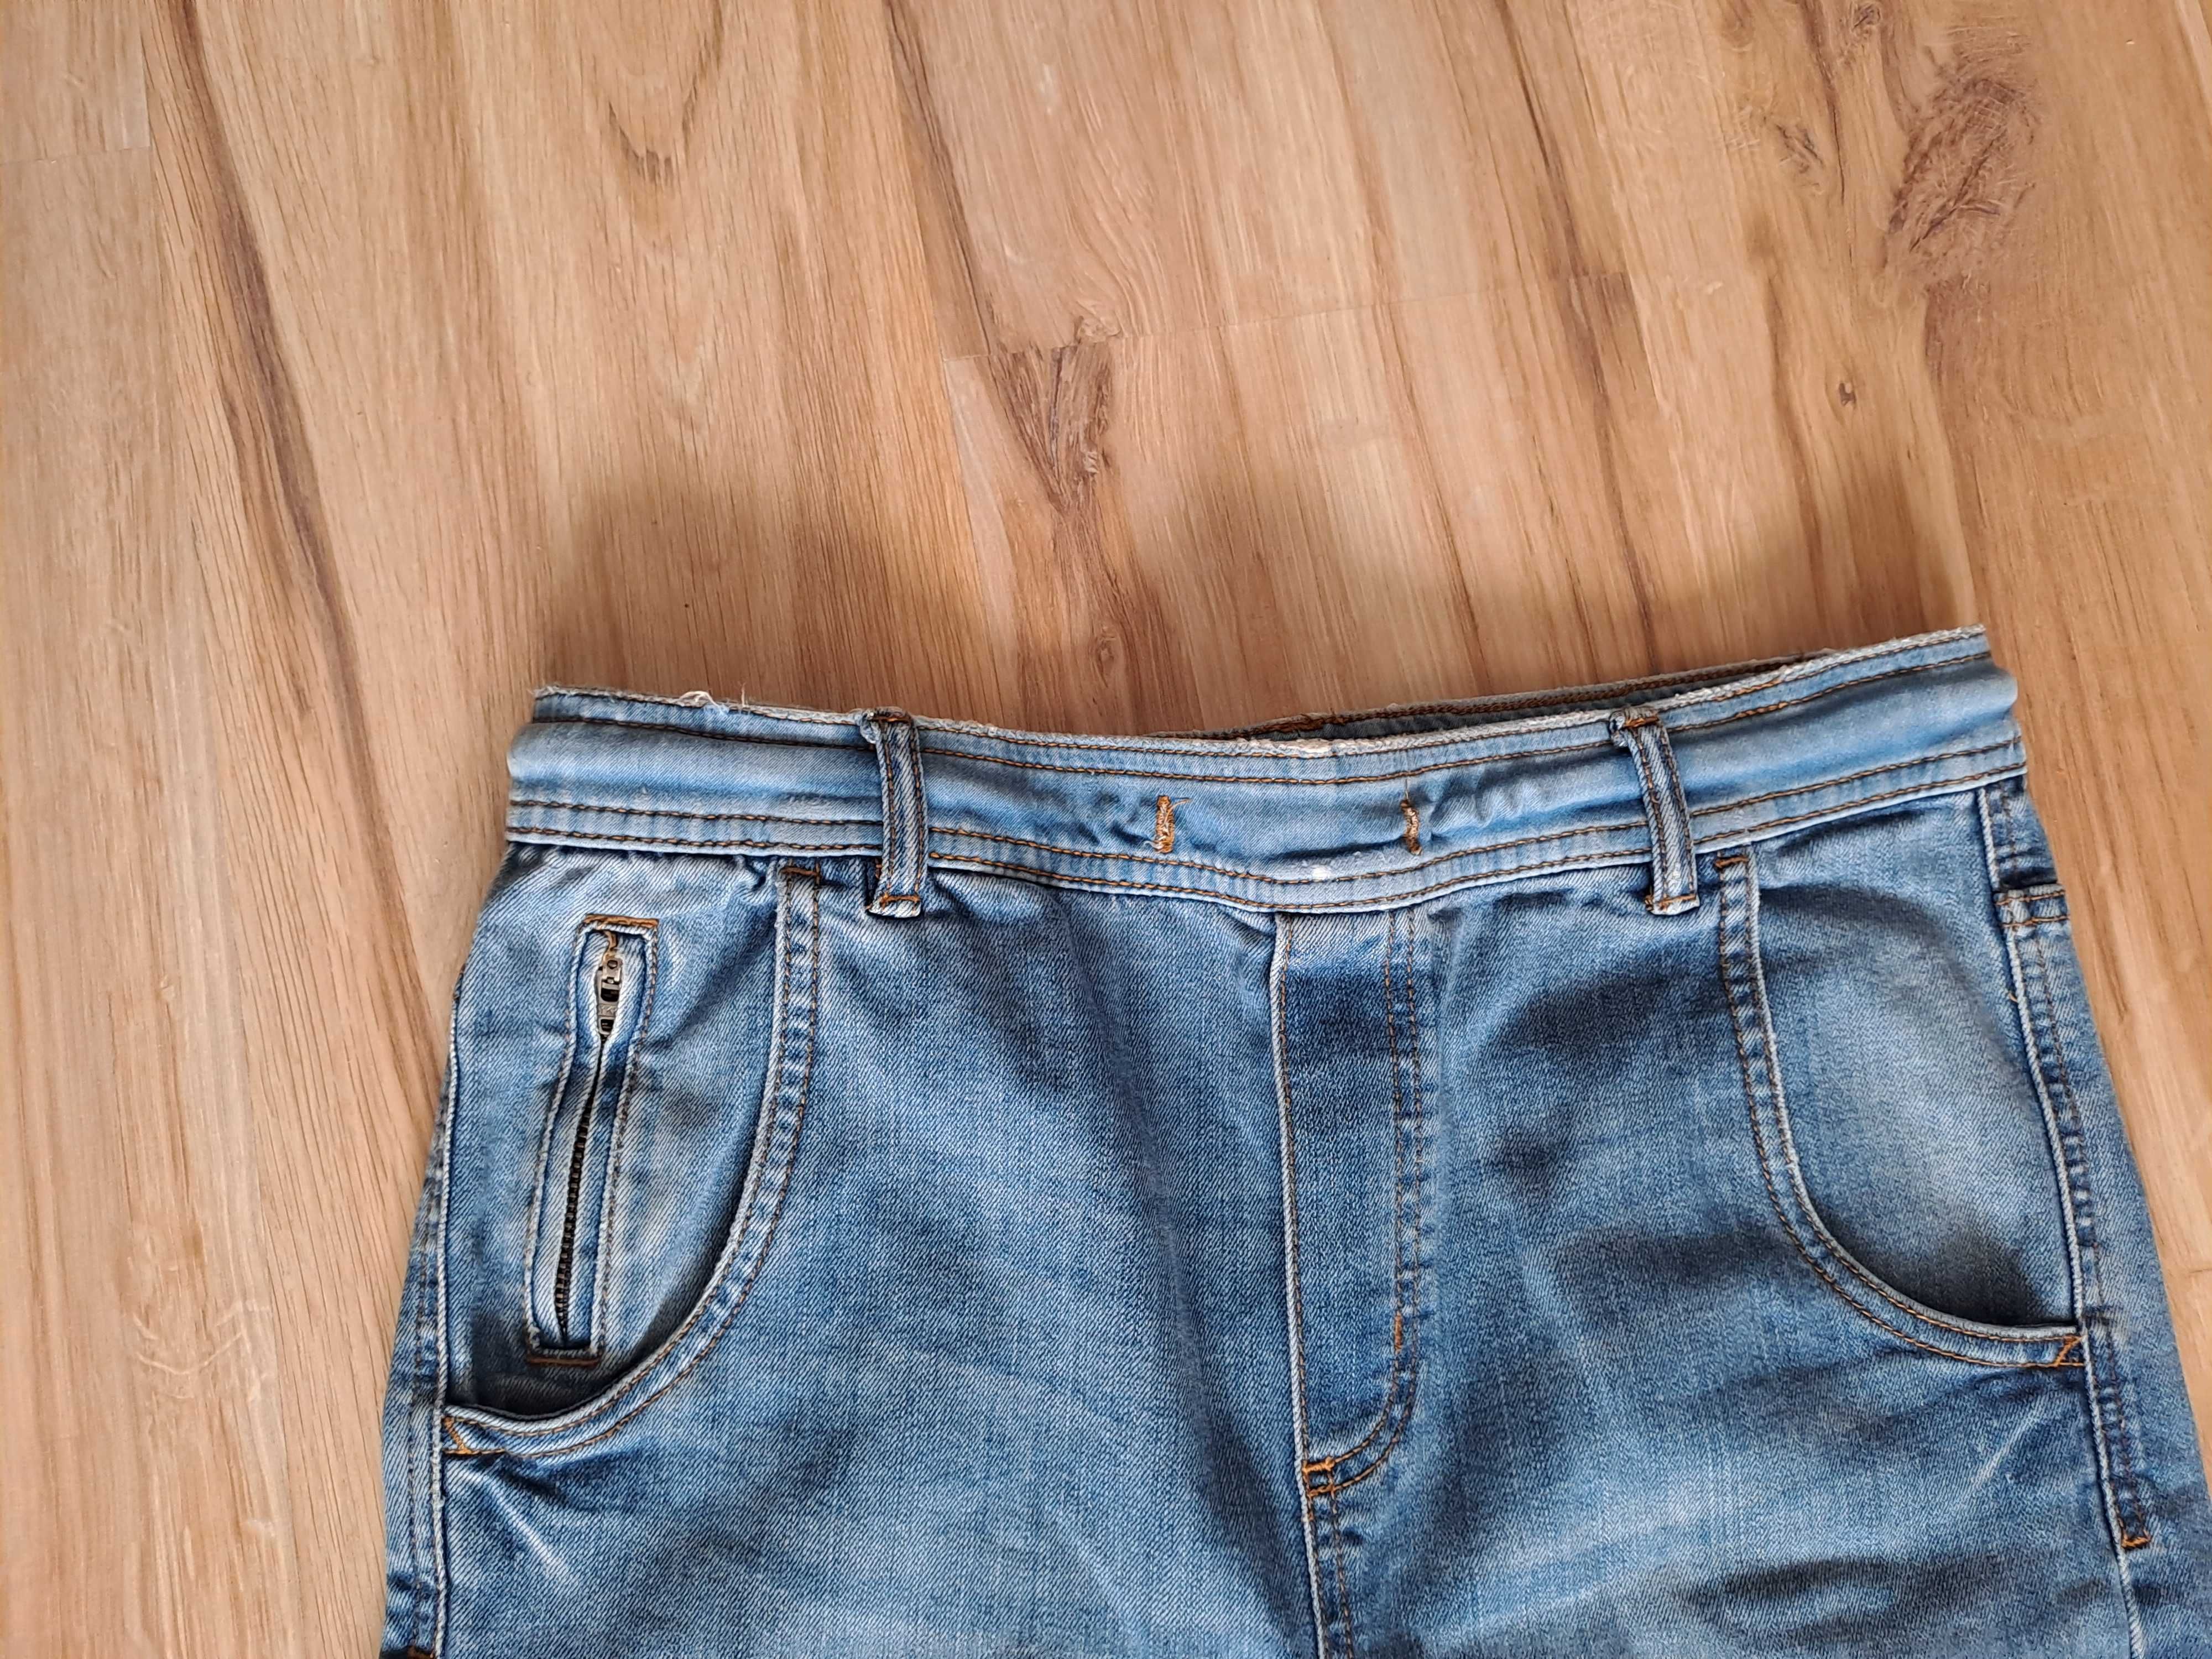 Spodnie jeansowe Zara 164